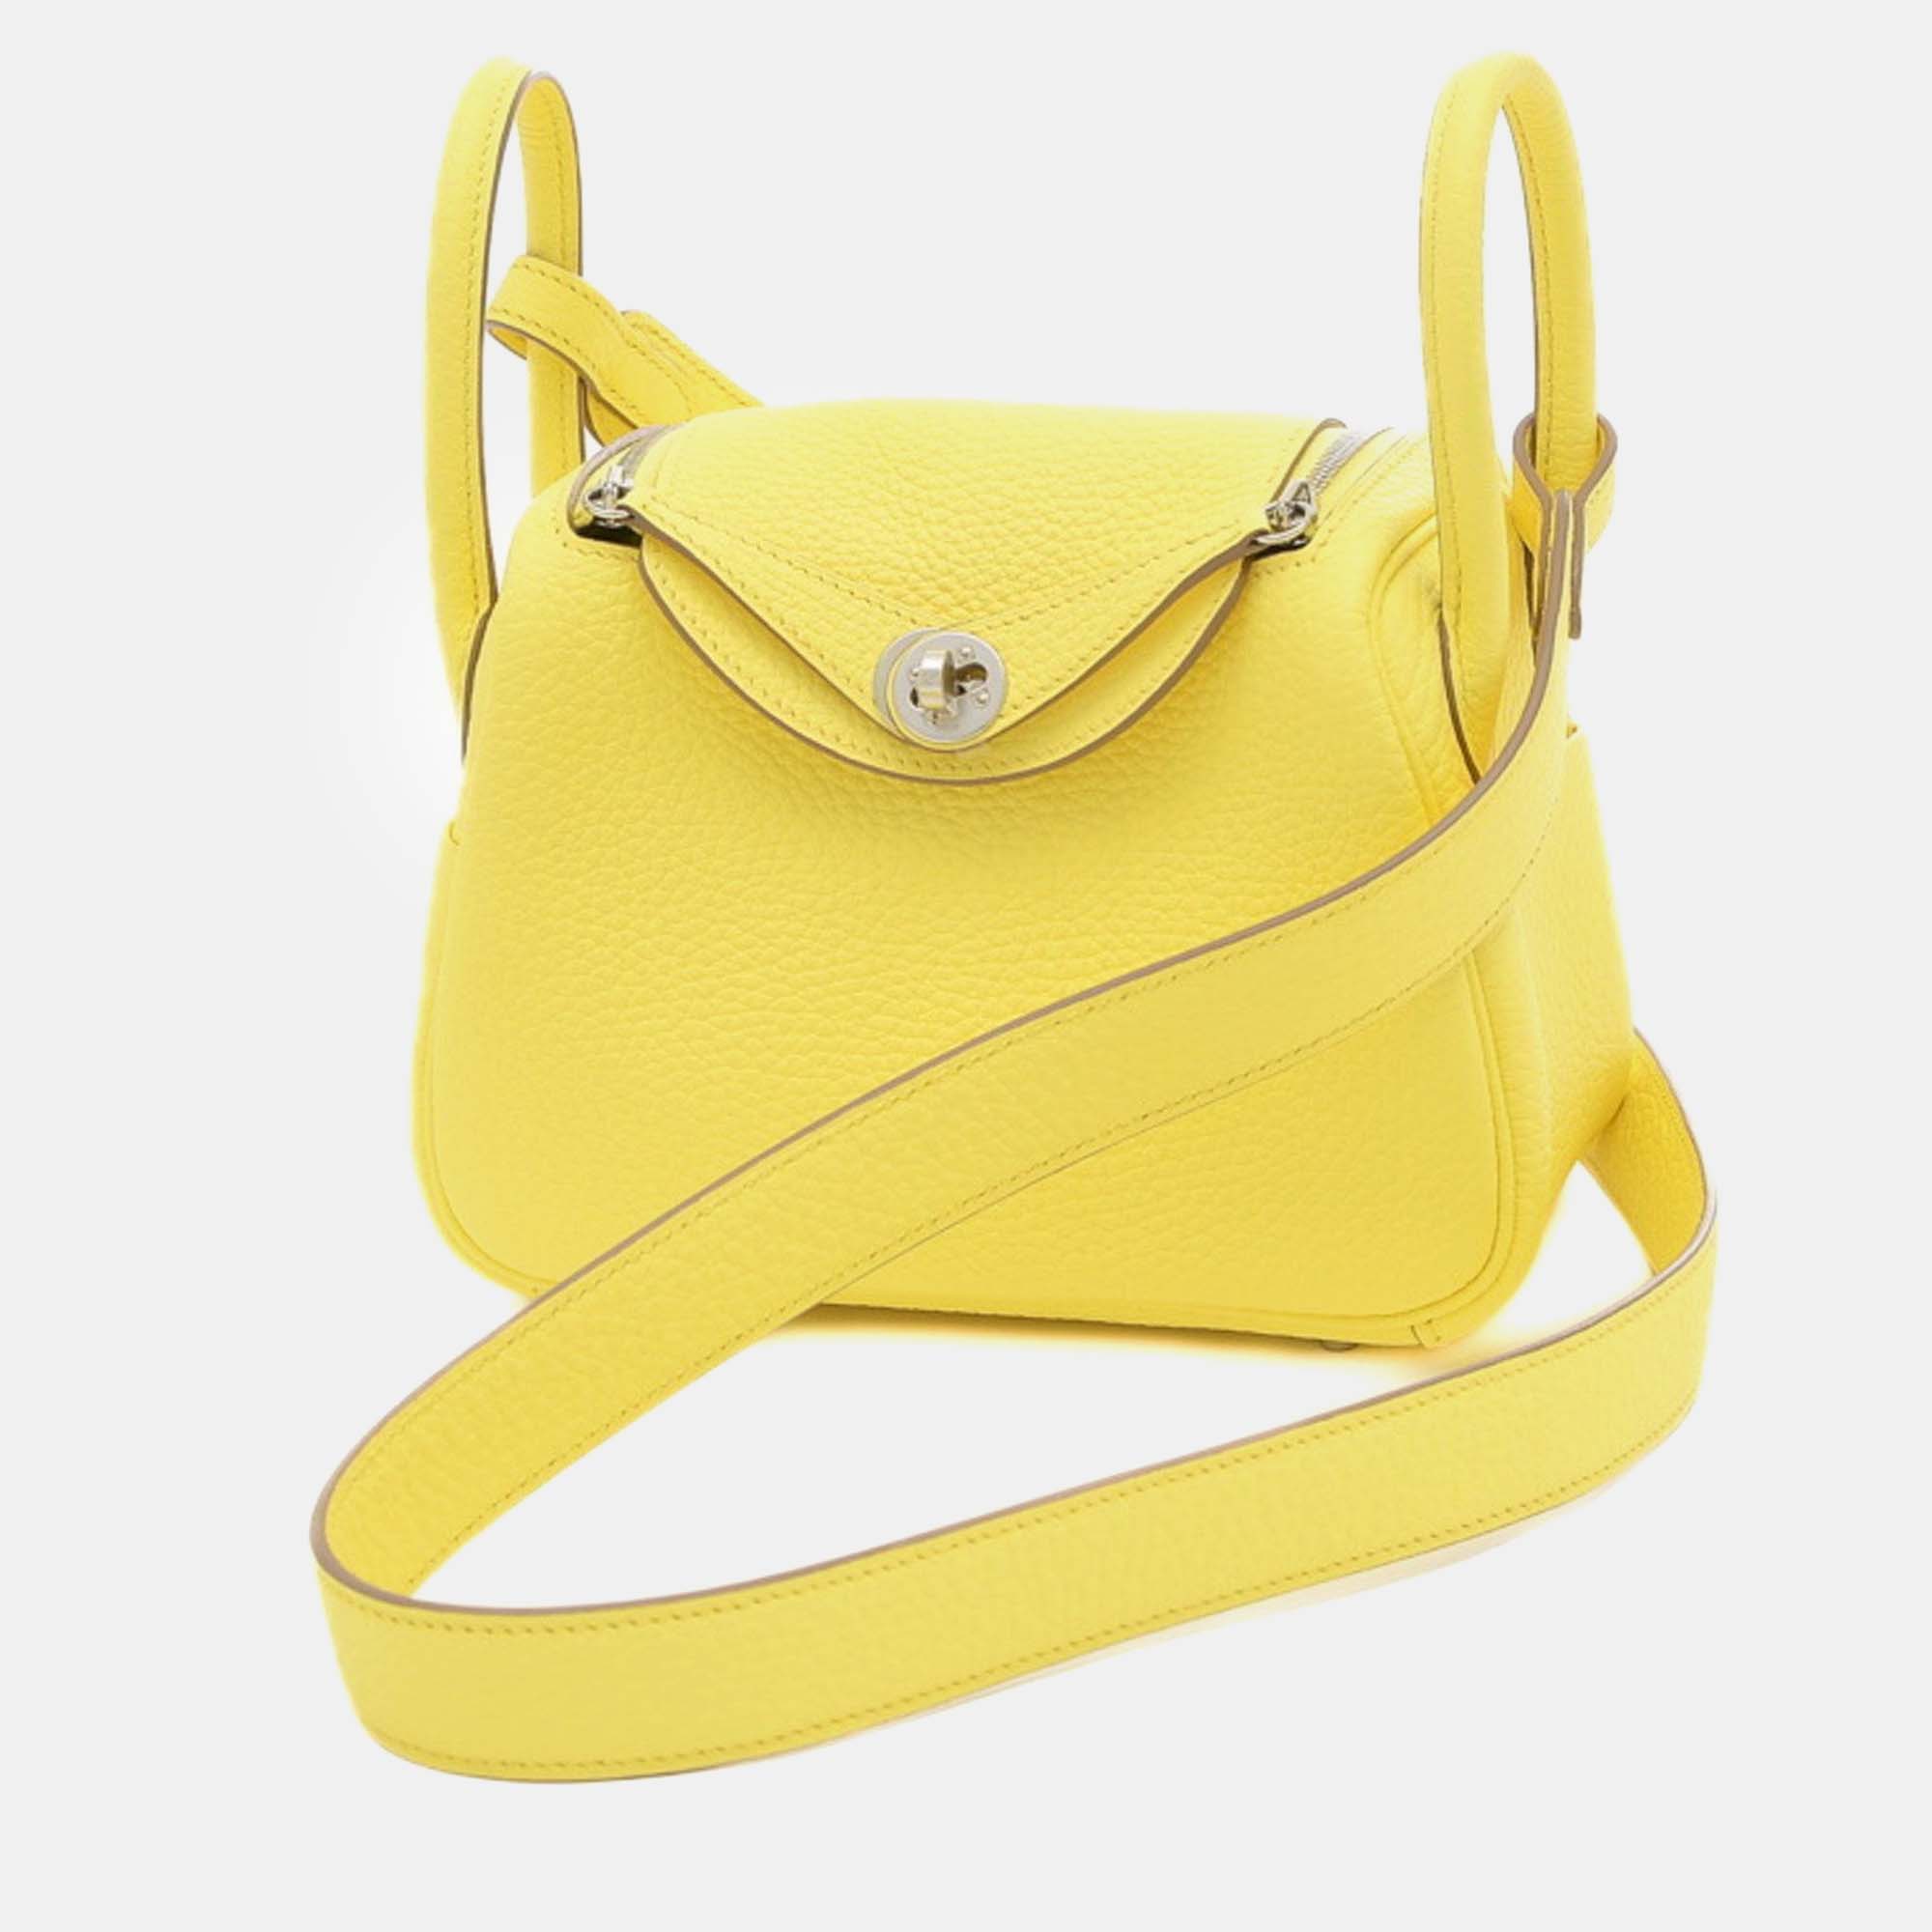 Hermes limoncello taurillon clemence lindy handbag